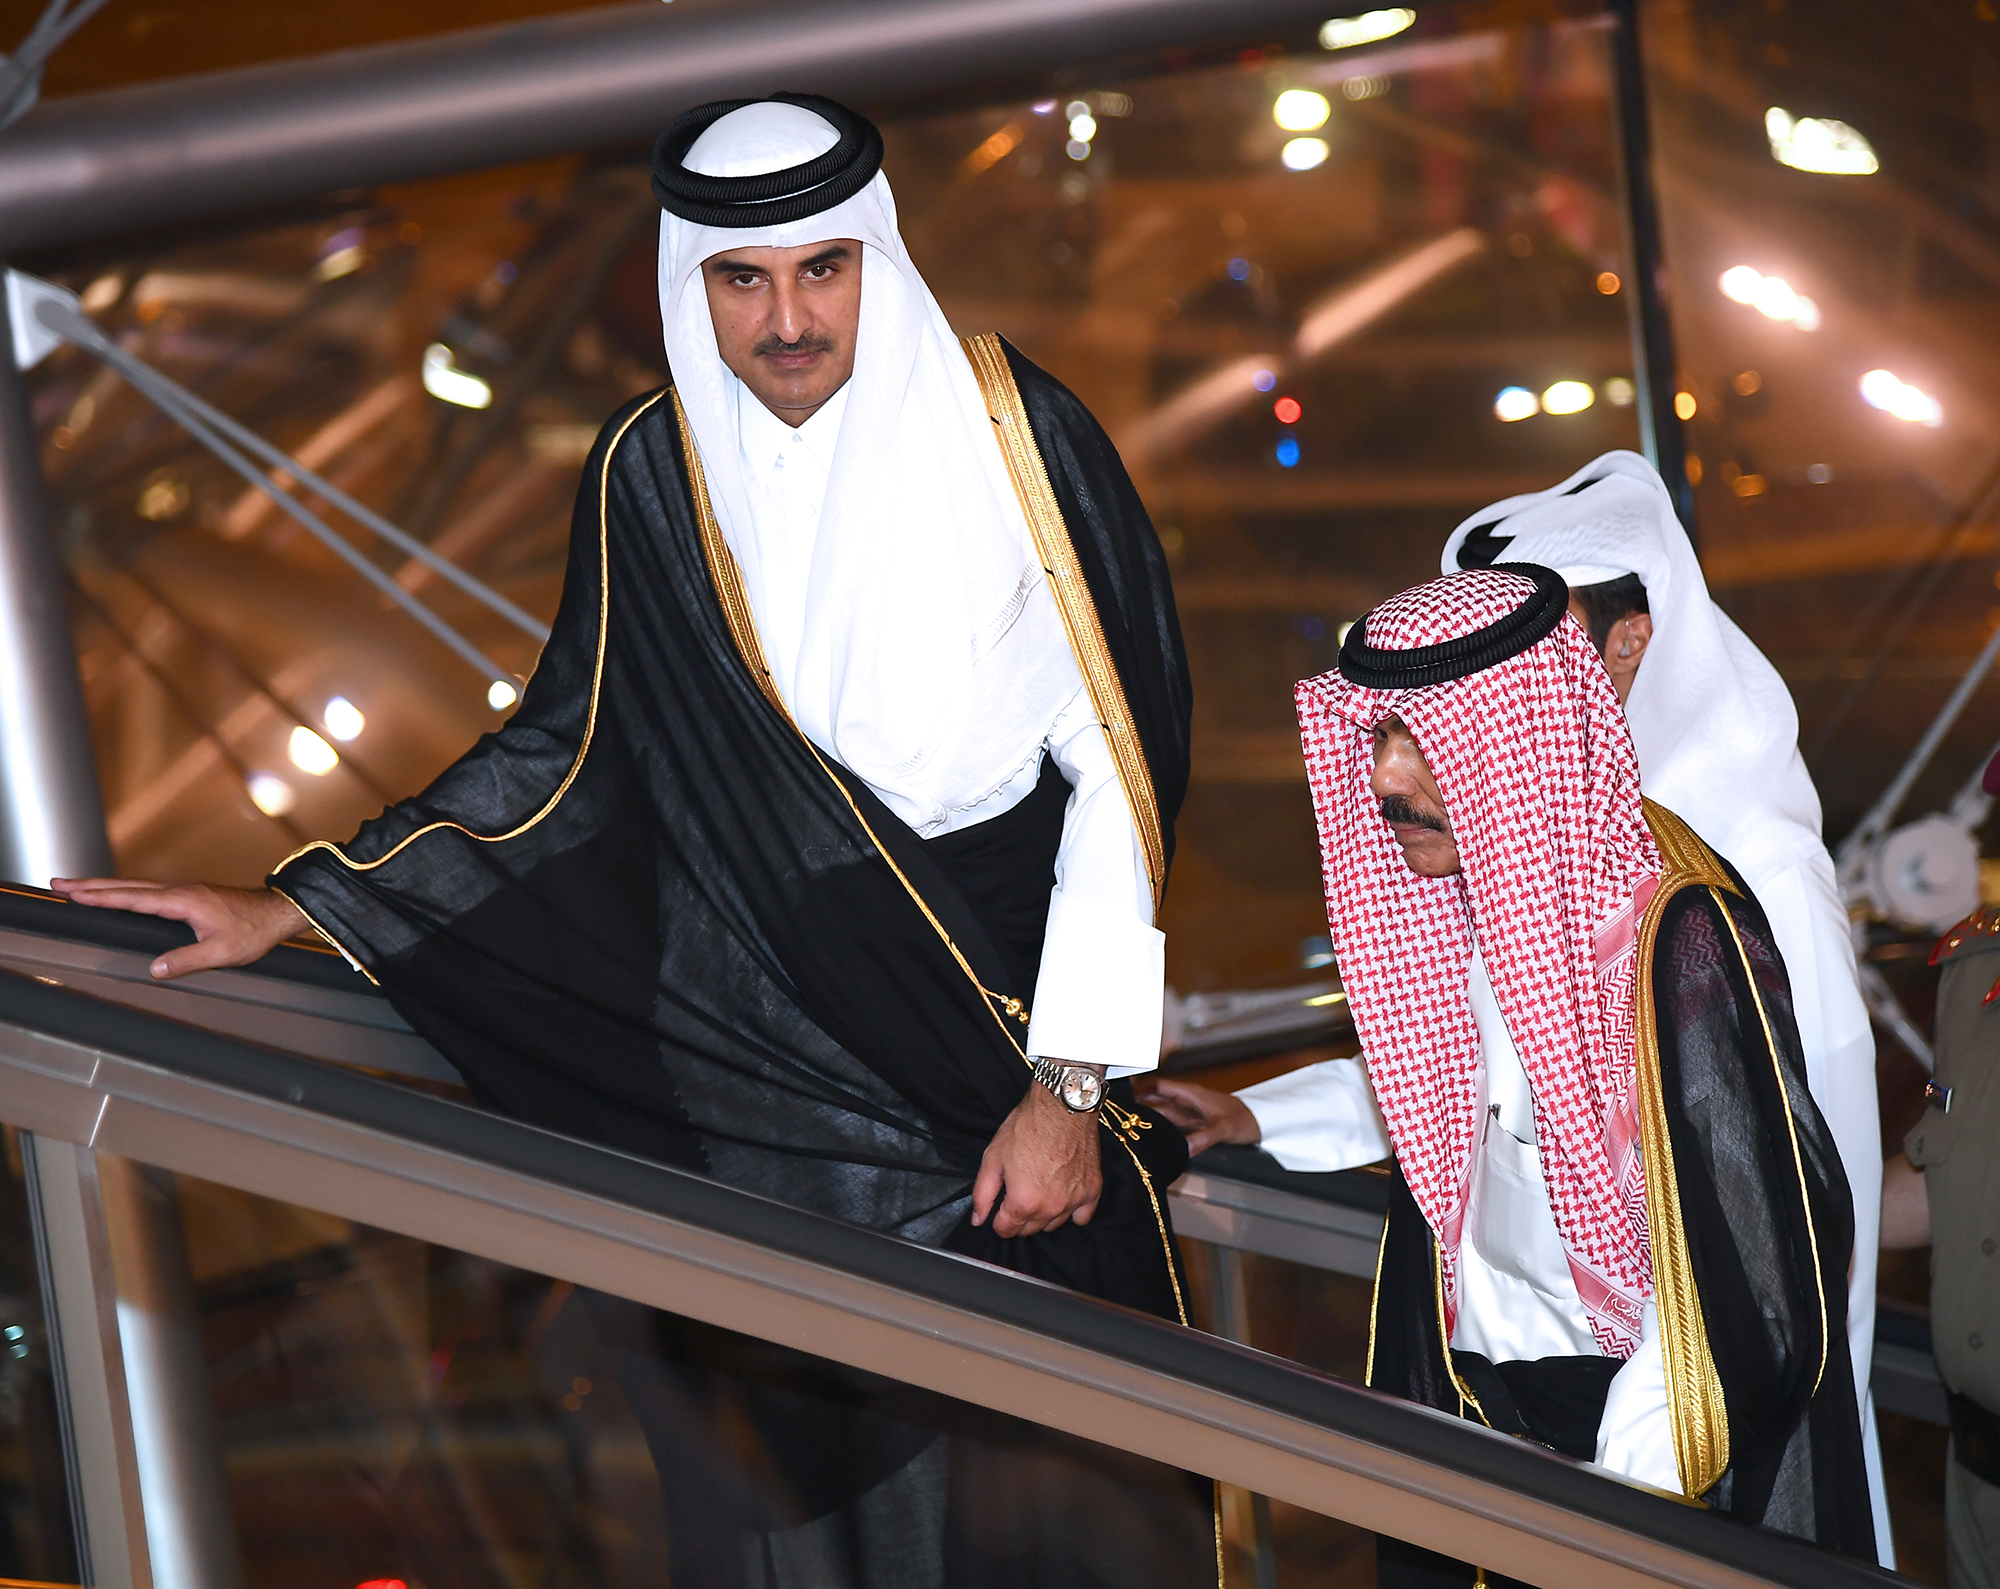 سمو الشيخ تميم بن حمد بن خليفة آل ثاني أمير دولة قطر يغادر الكويت بعد زيارة أخوية